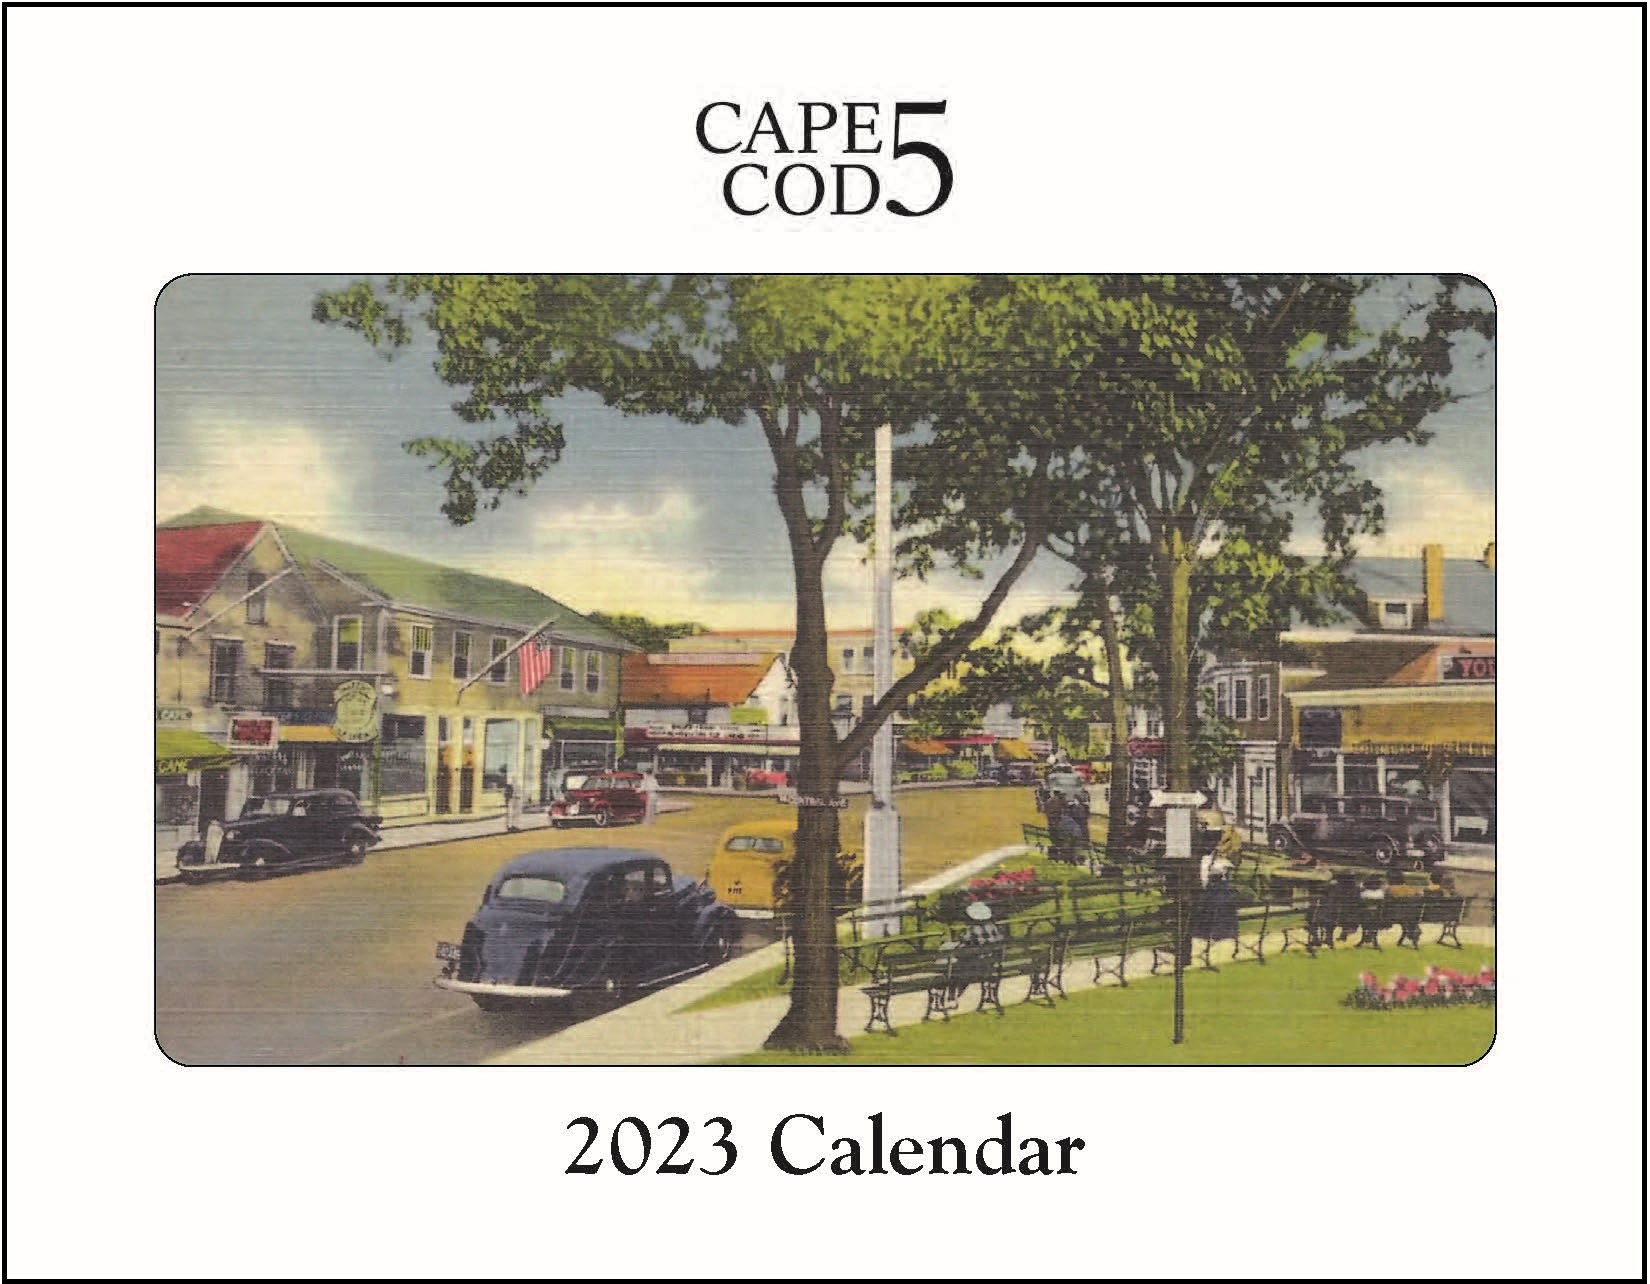 2023 Cape Cod 5 Calendar